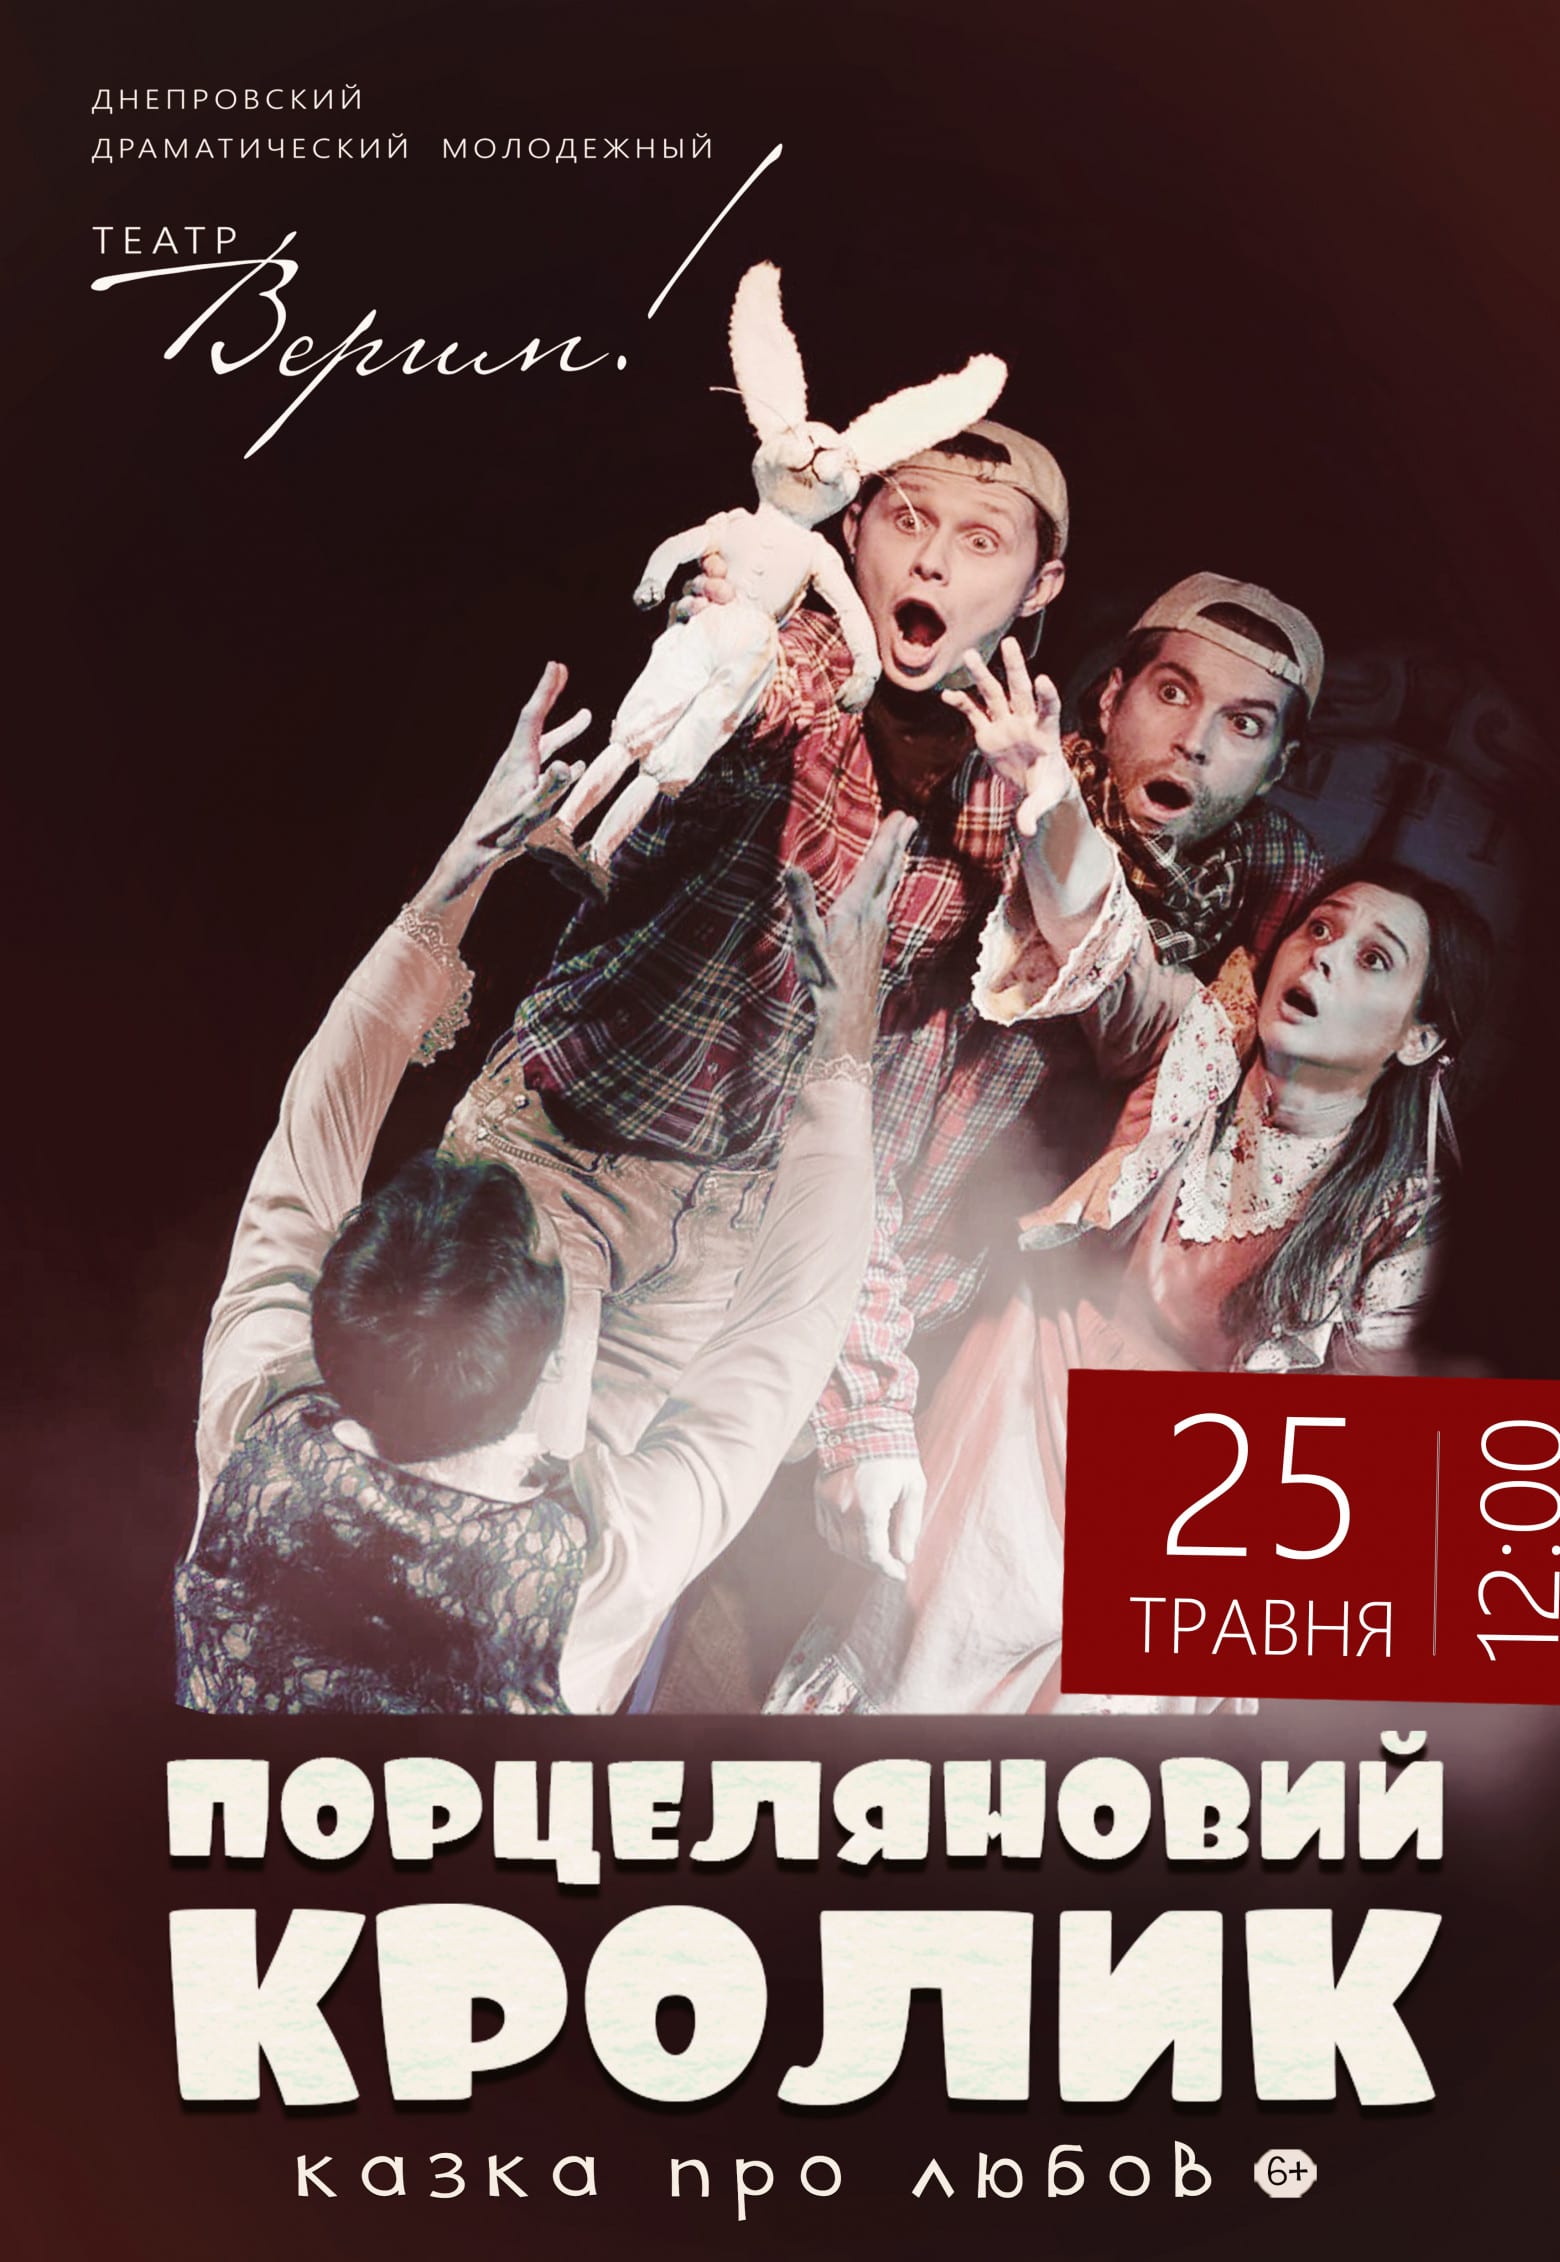 Театр Верим - Порцеляновый кролик Днепр, 25.05.2019, цена. Афиша Днепра